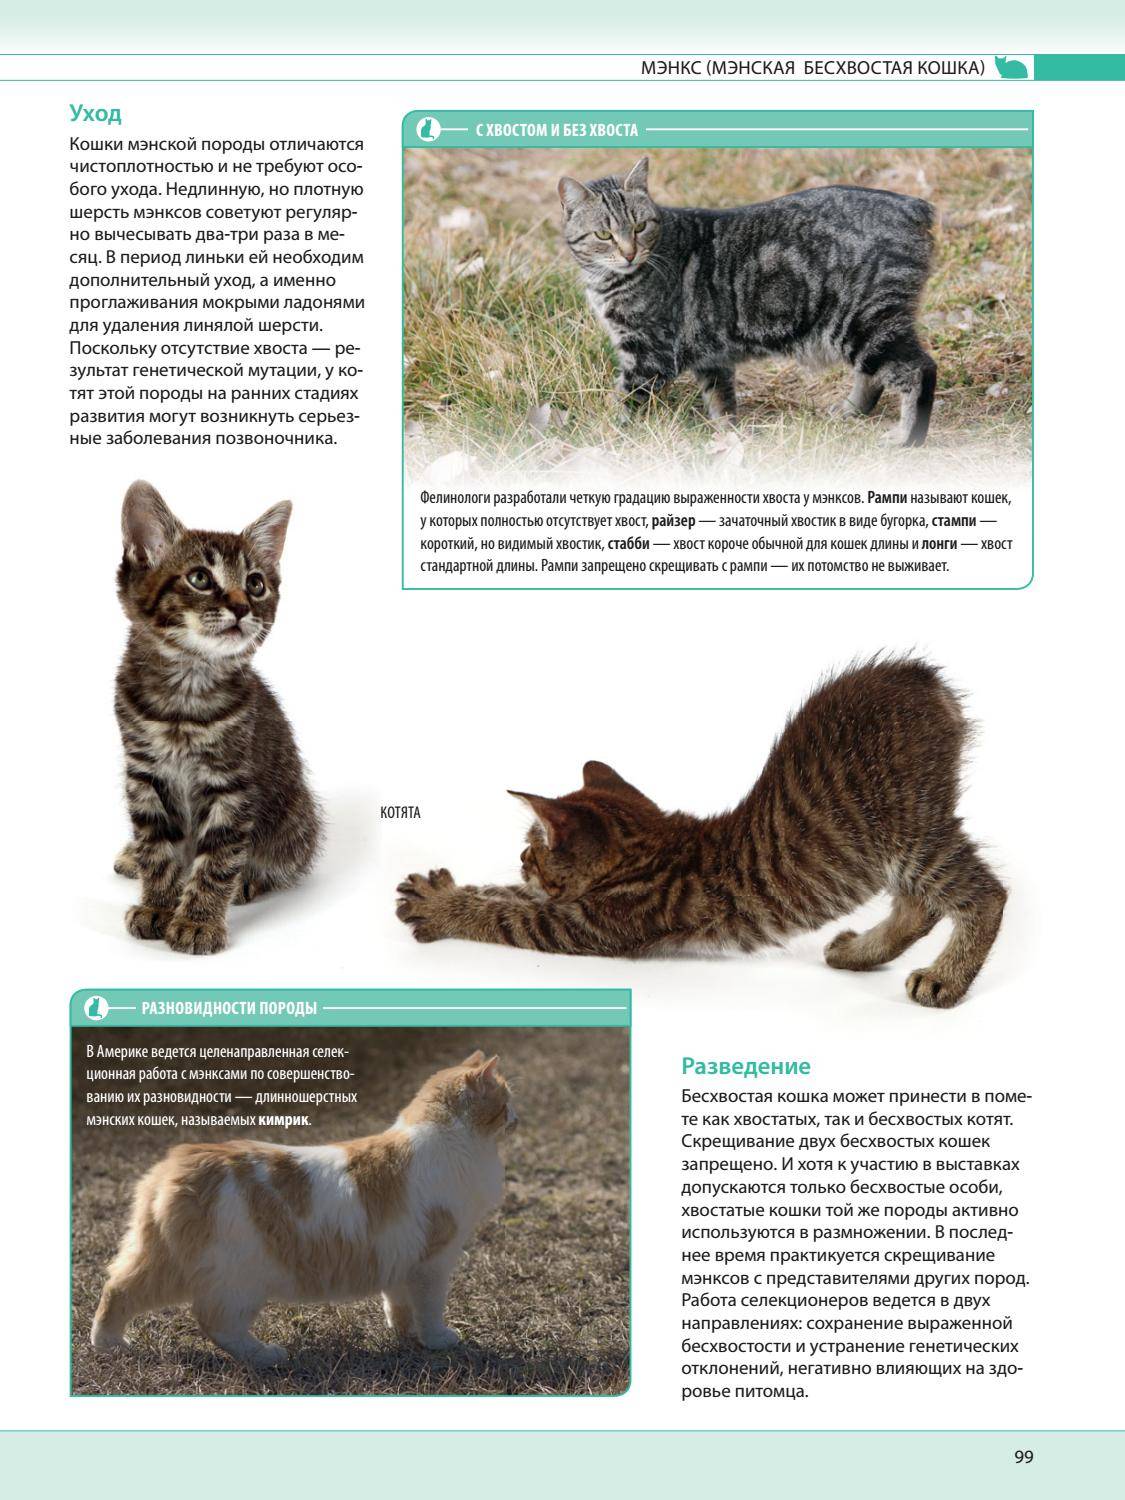 Порода кошек рагамаффин: происхождение, описание с фото, особенности ухода за животным